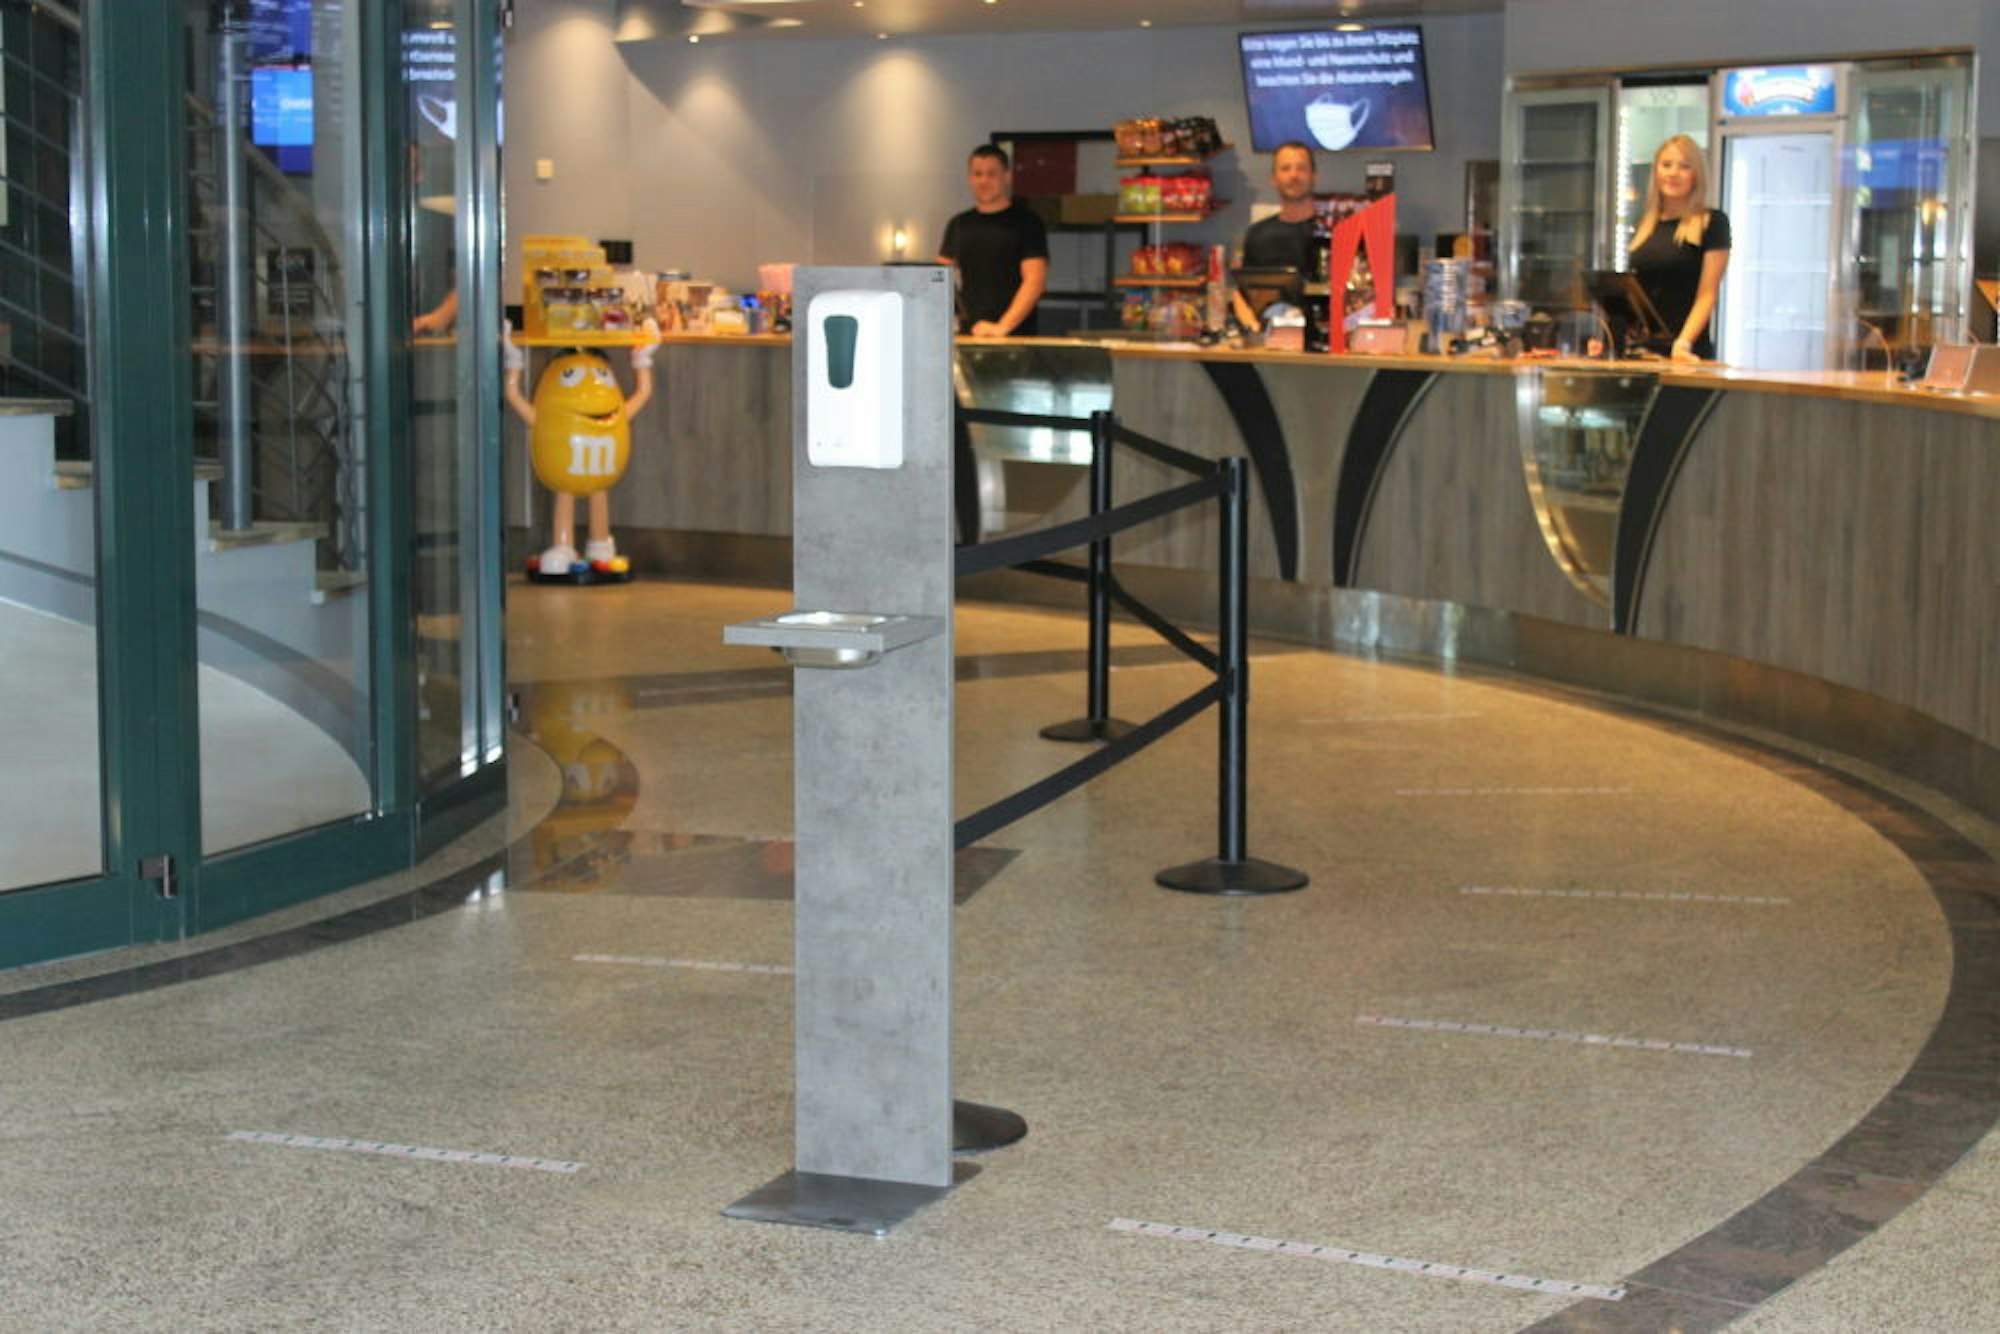 Durch Markierungen auf dem Boden wird sichergestellt, dass die Besucher an der Popcorn-Schlange den nötigen Abstand halten.